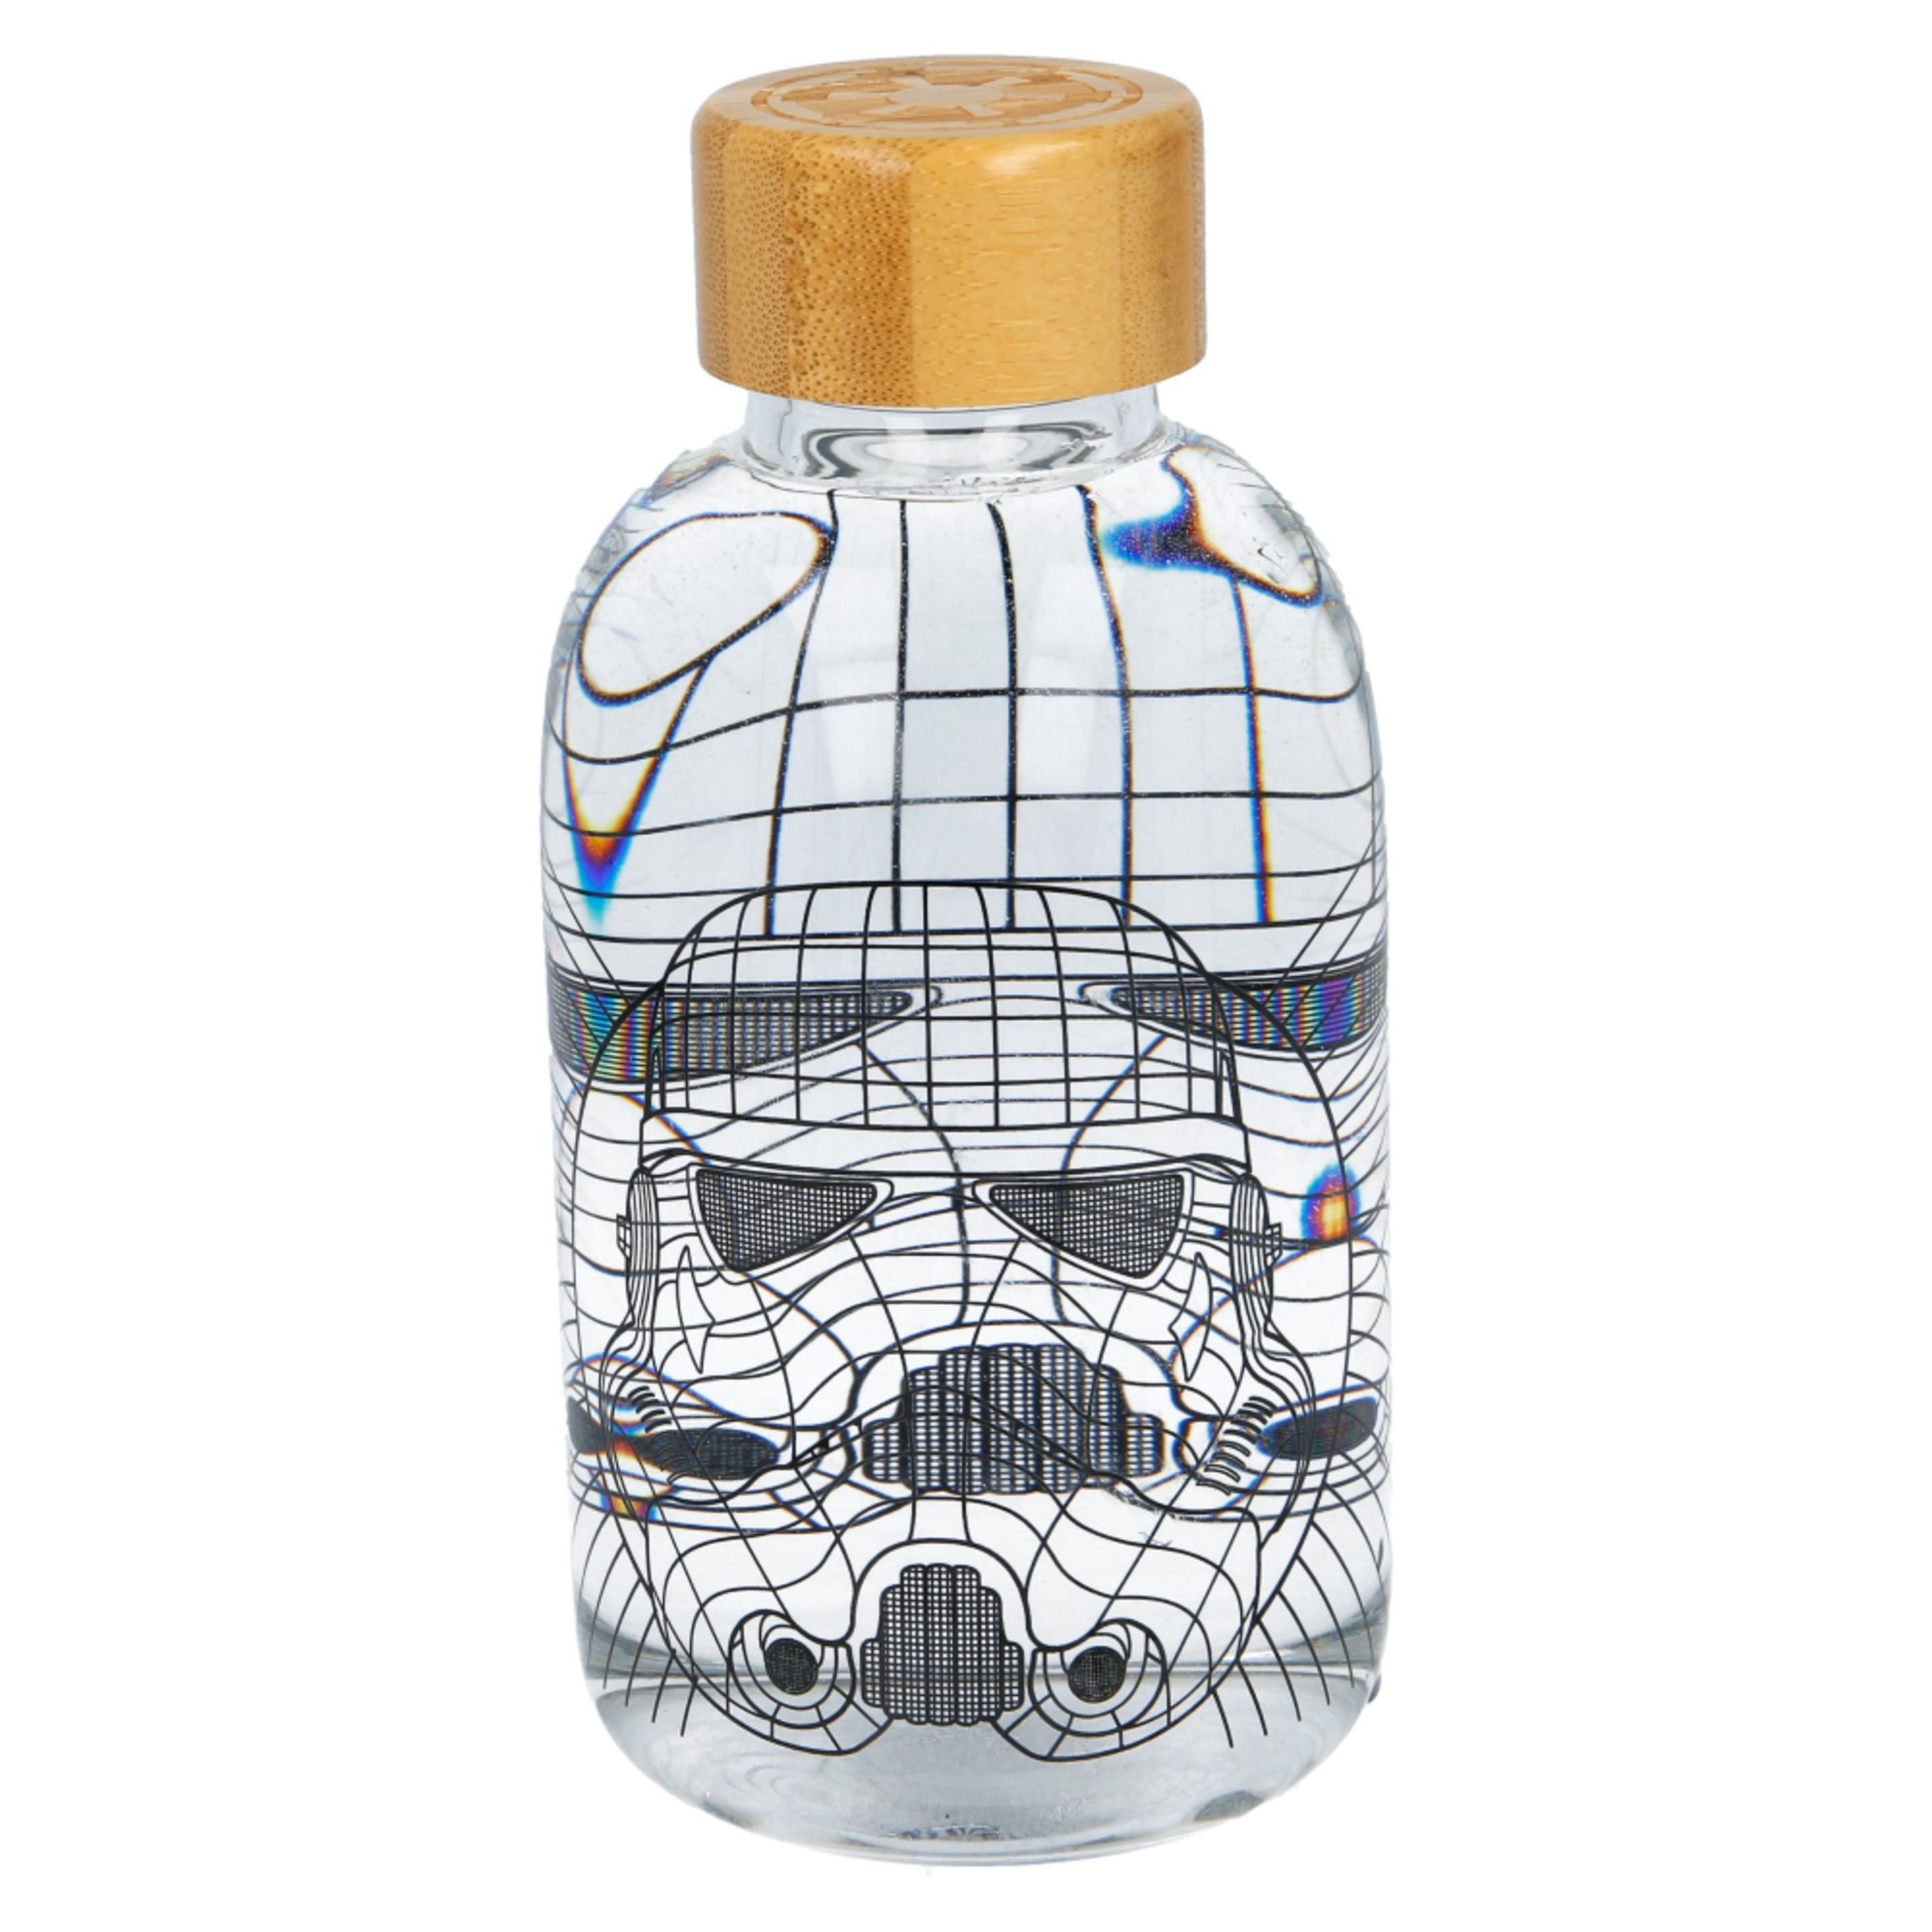 Botella Star Wars 63640 - Transparente  MKP